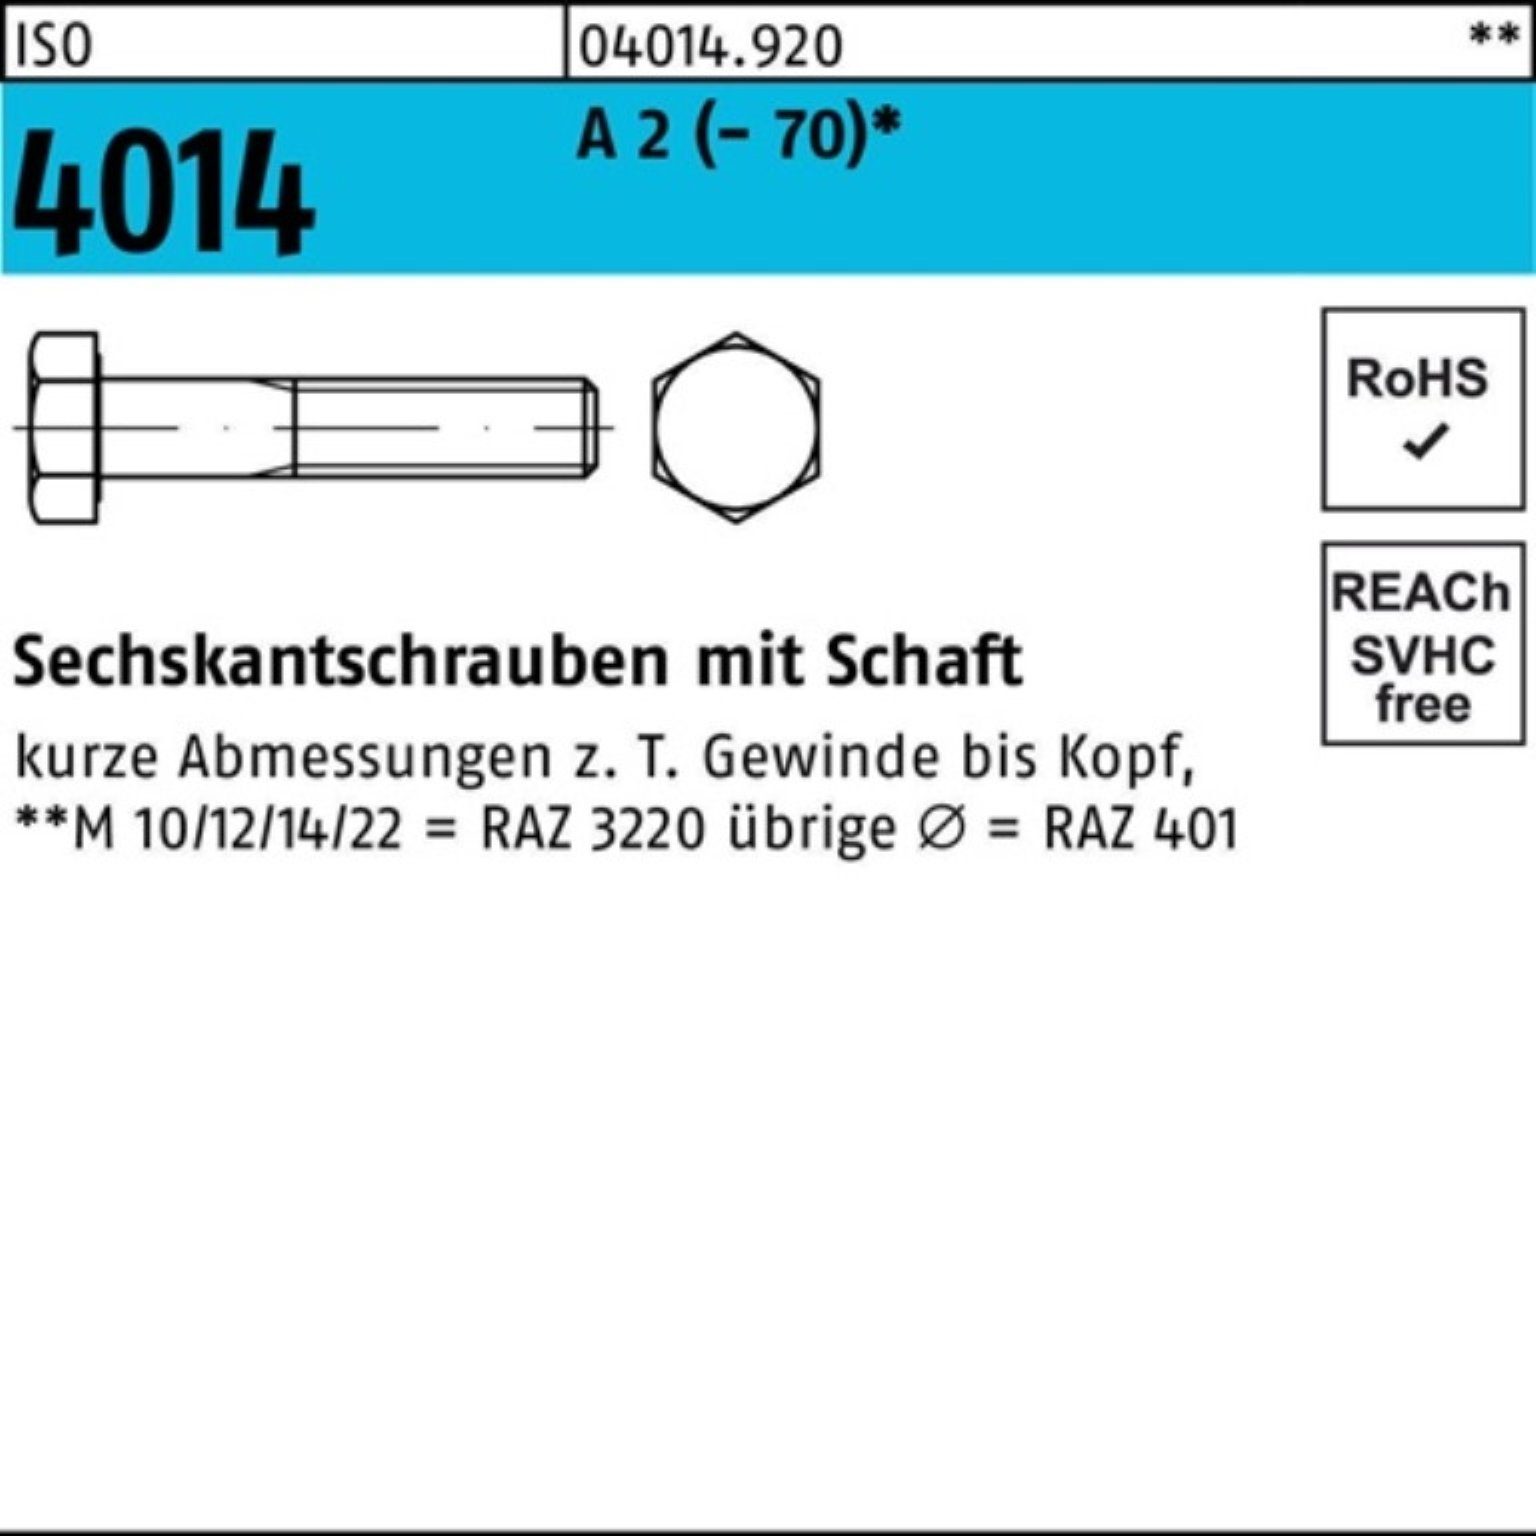 Bufab Sechskantschraube 100er Pack Sechskantschraube ISO 4014 Schaft M12x 50 A 2 (70) 50 St